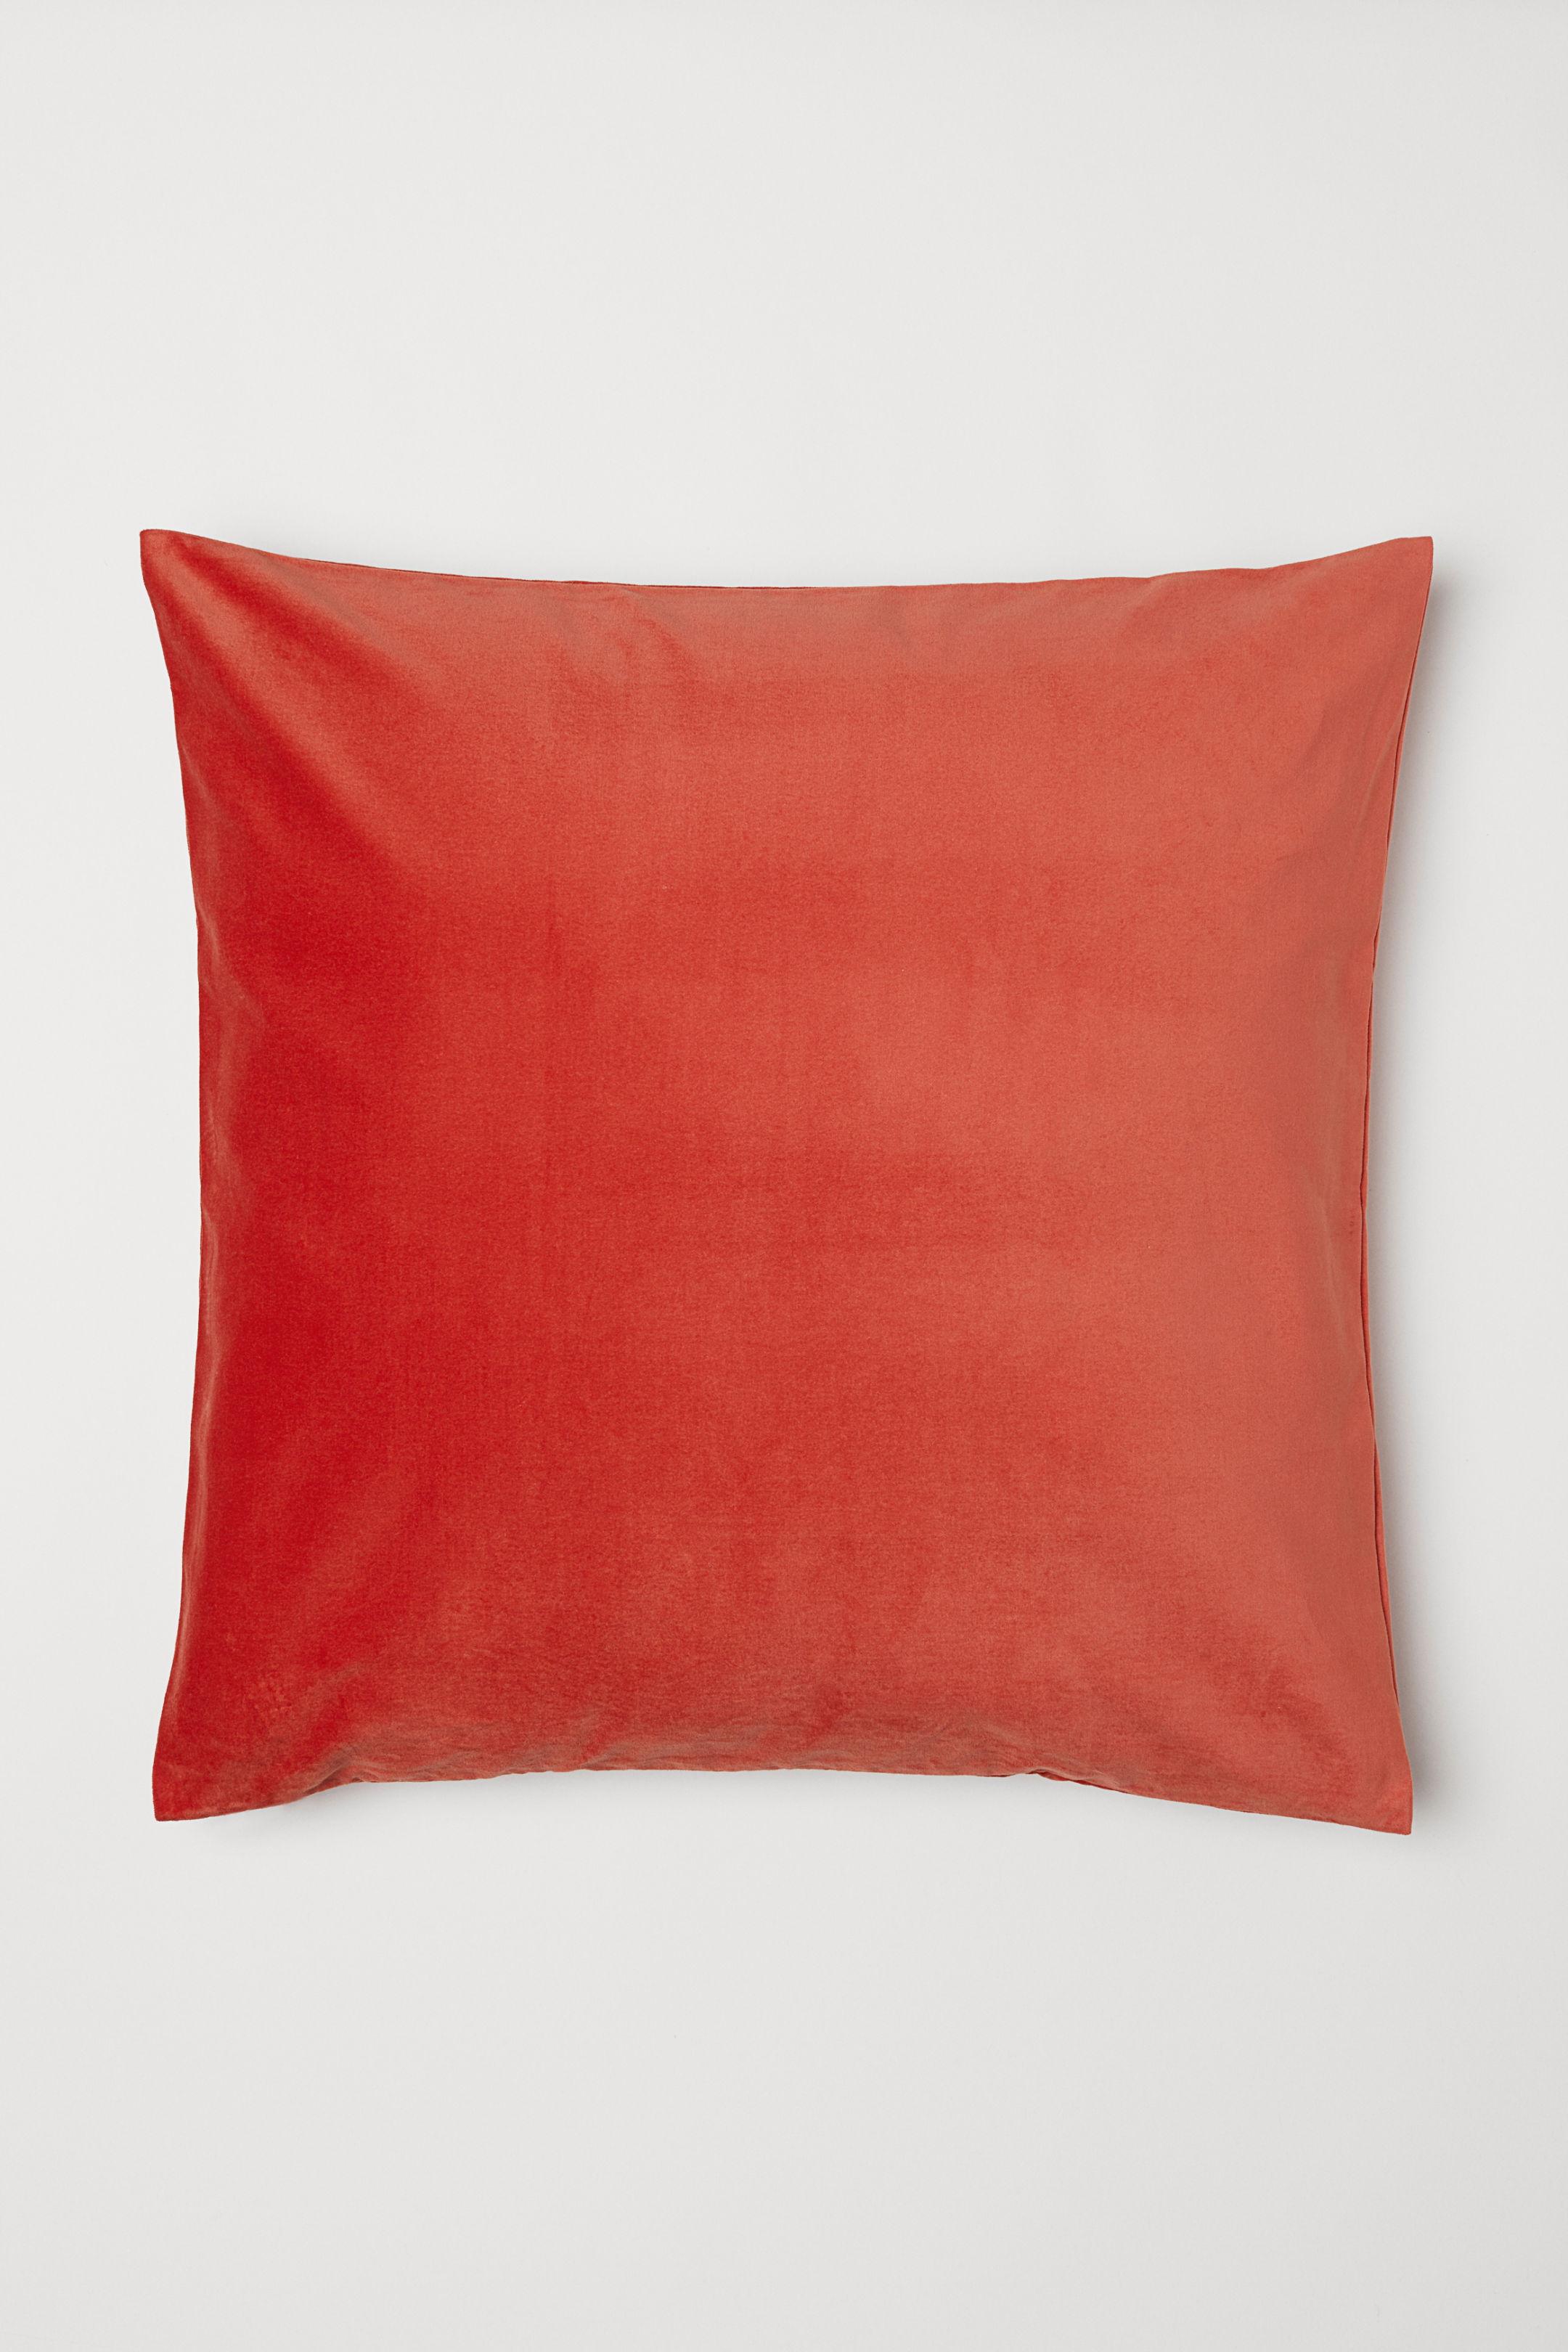 coral velvet pillow cover